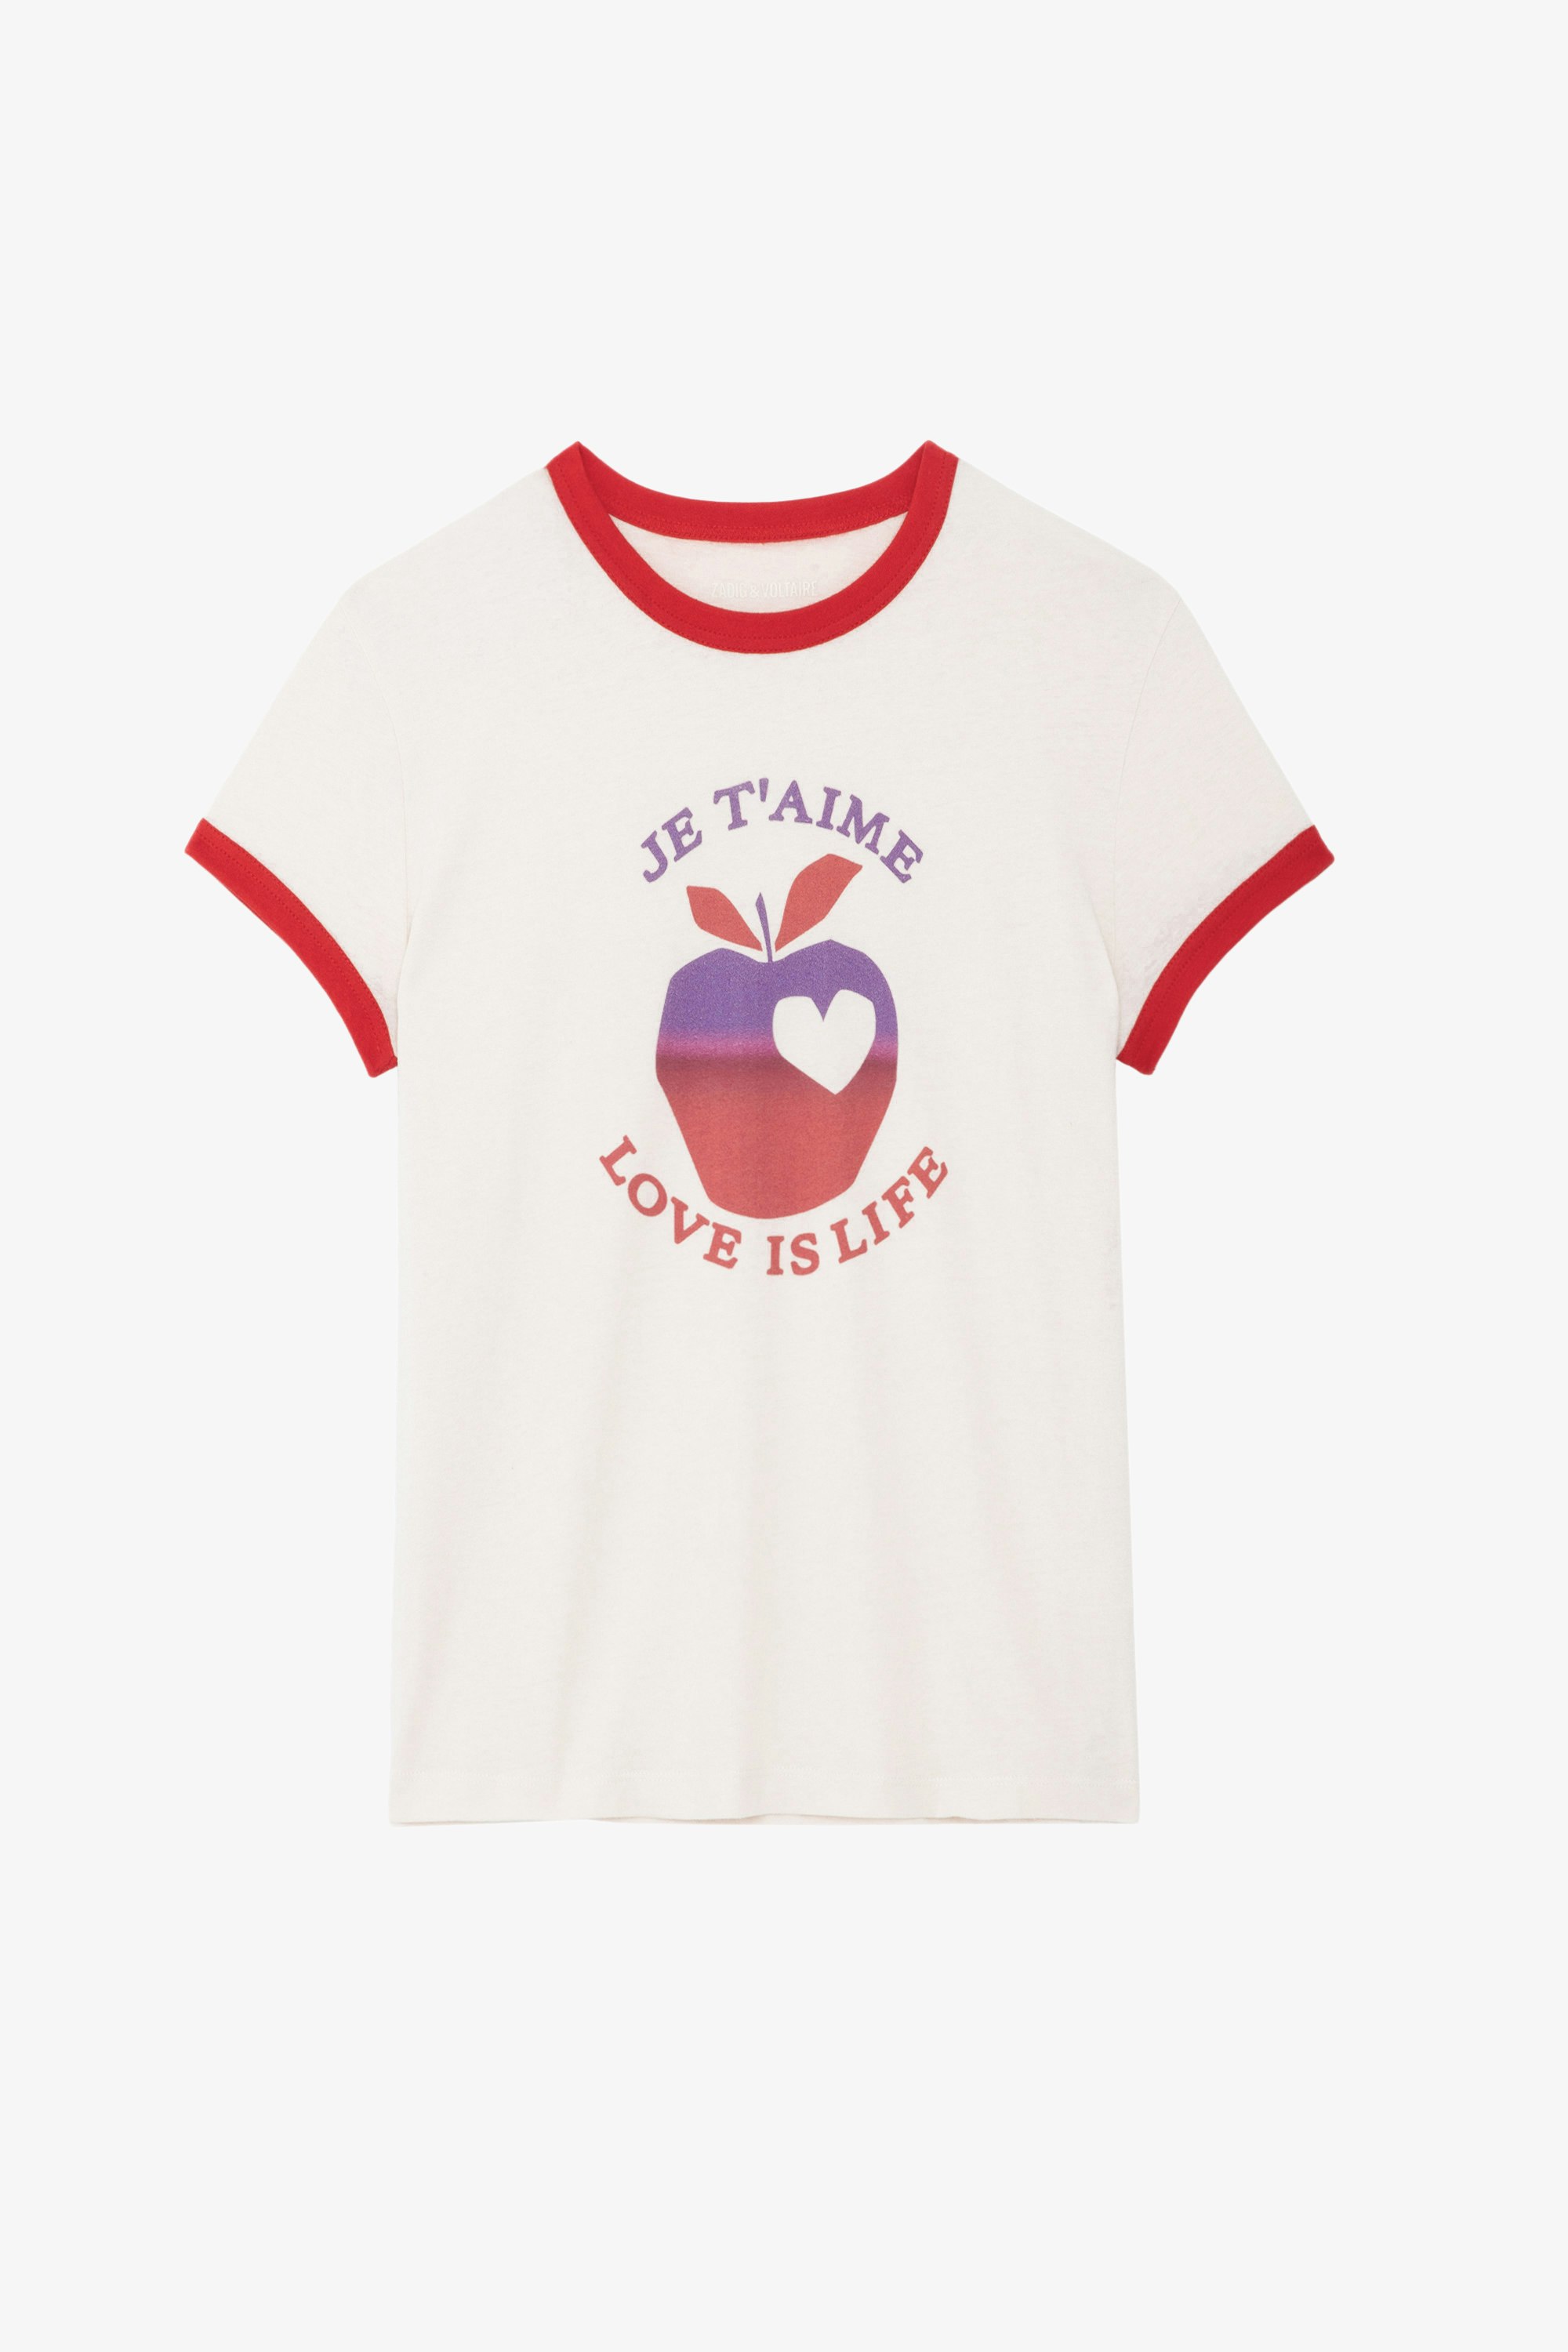 T-shirt Walk Love Is Life - T-shirt rose clair à col rond, manches courtes, motifs et bords contrastés.